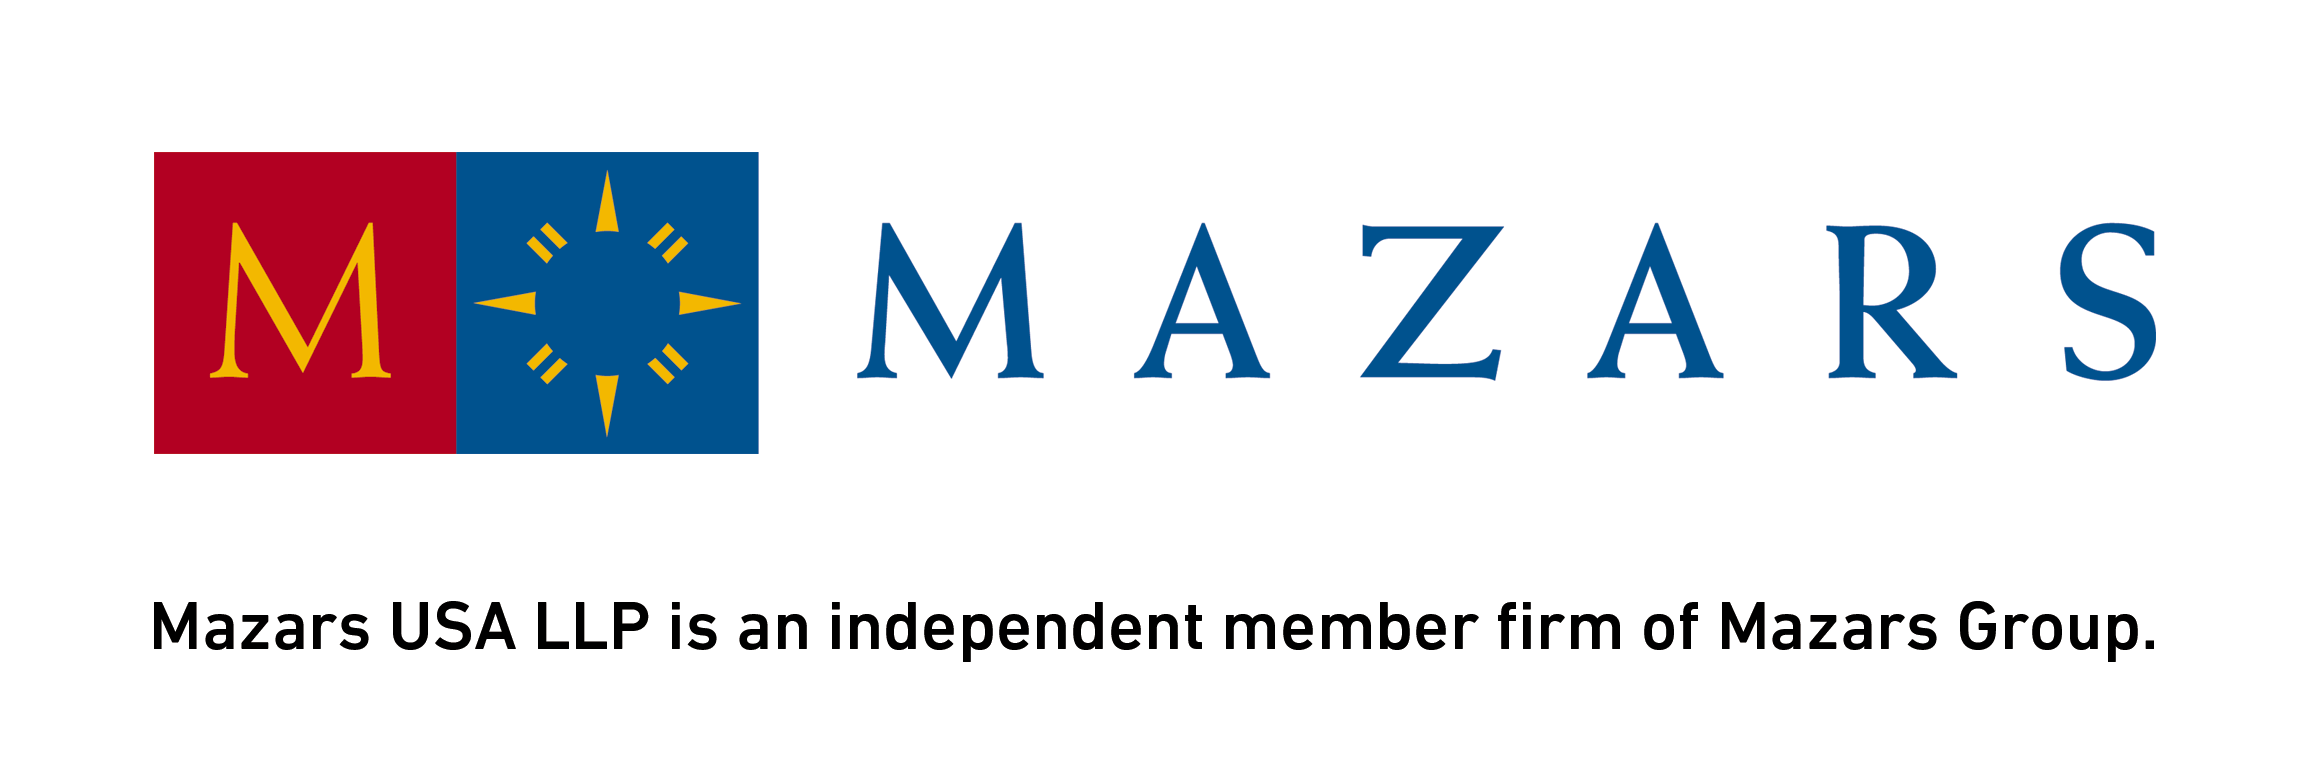 Mazars Logo 2017 59b32157ce032